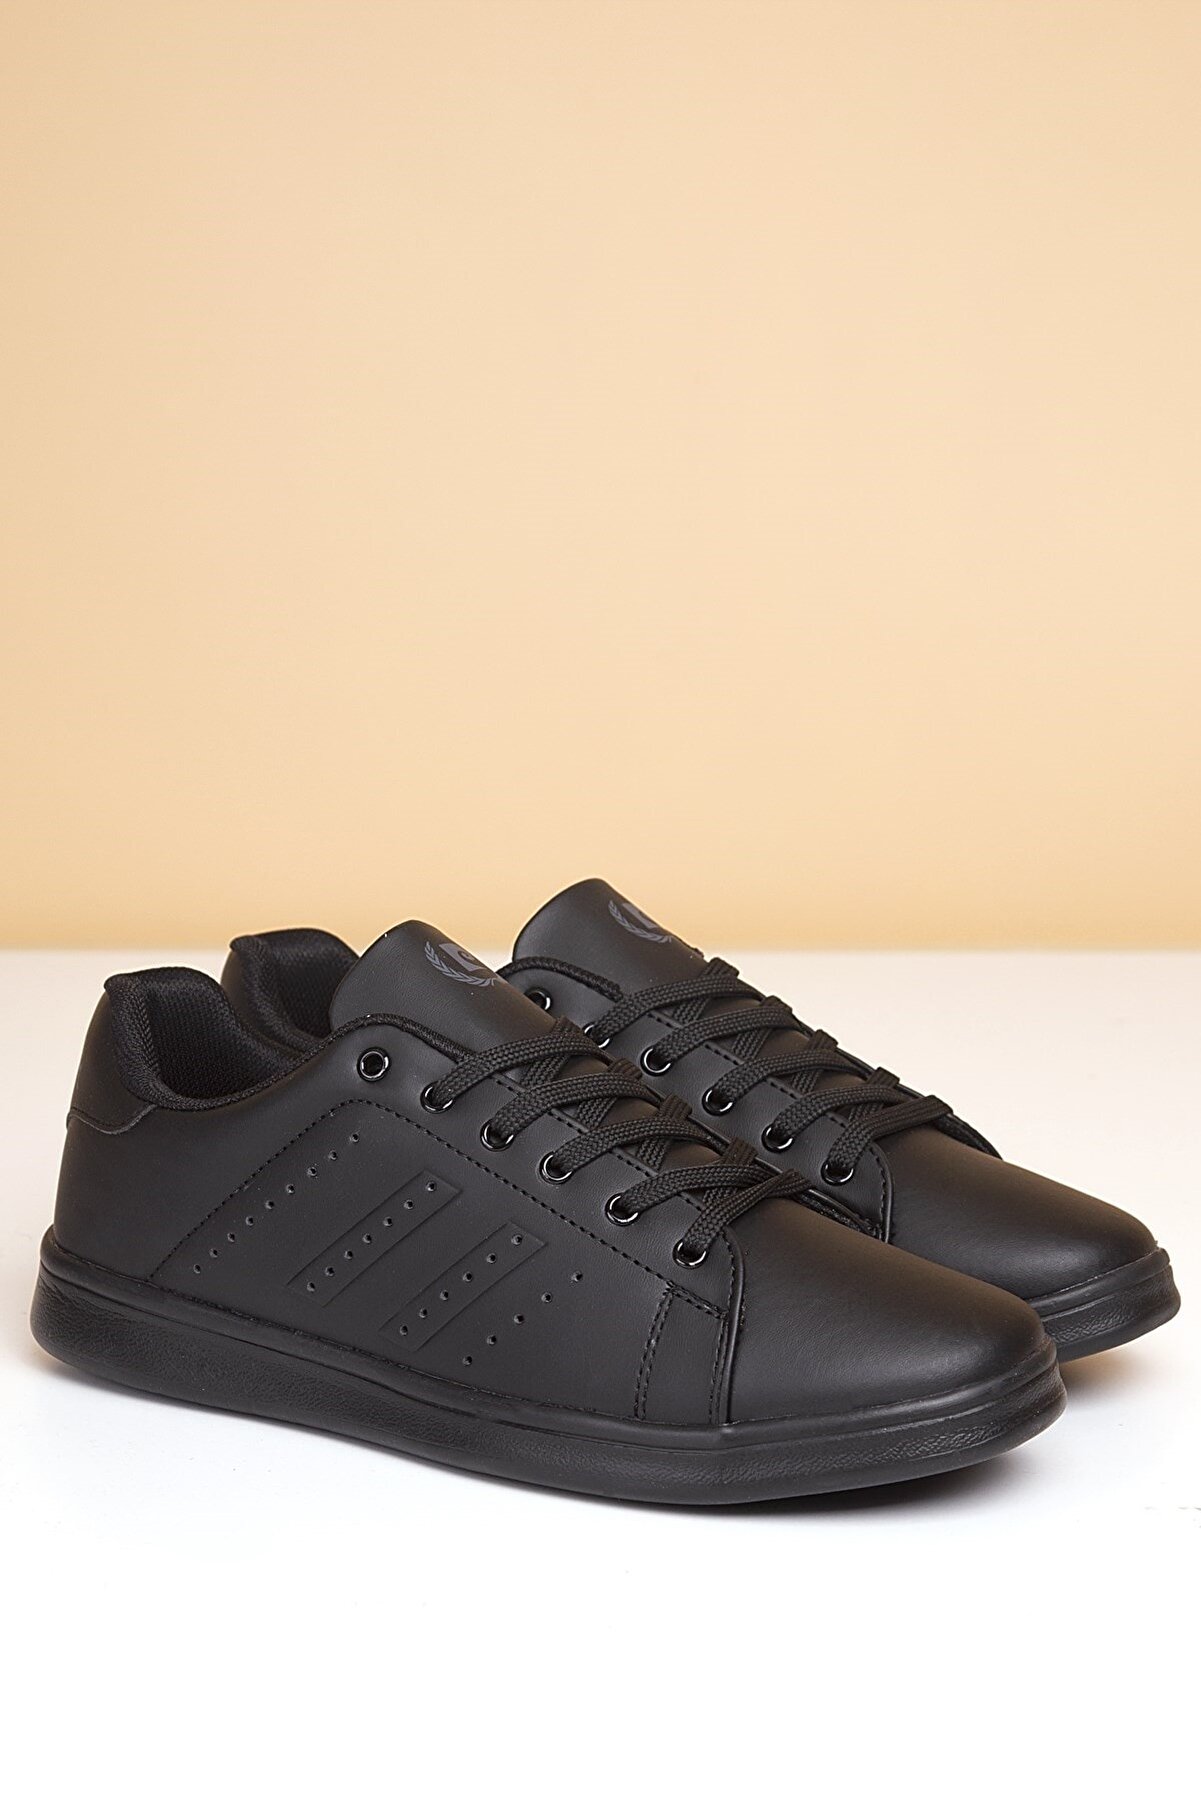 Pierre Cardin Erkek Günlük Spor Ayakkabı-Siyah PCS-10152